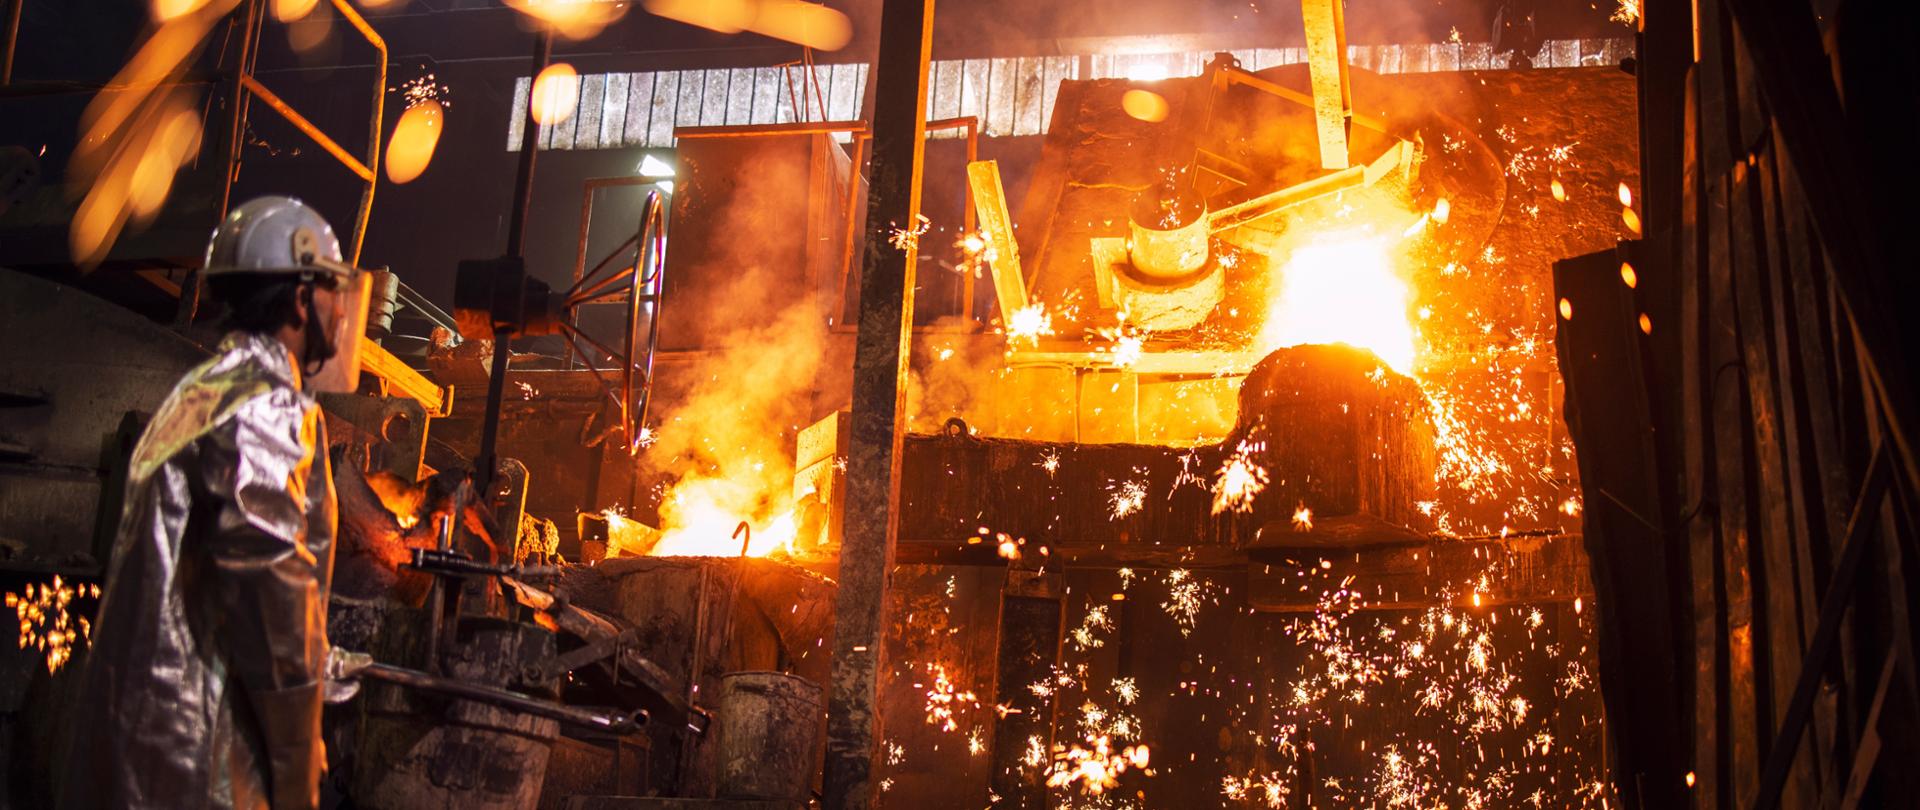 Po lewej stronie pracownik odlewni kontrolujący proces topienia żelaza w piecu. Lejąca się płonąca płynna stal i iskry latające dookoła. 